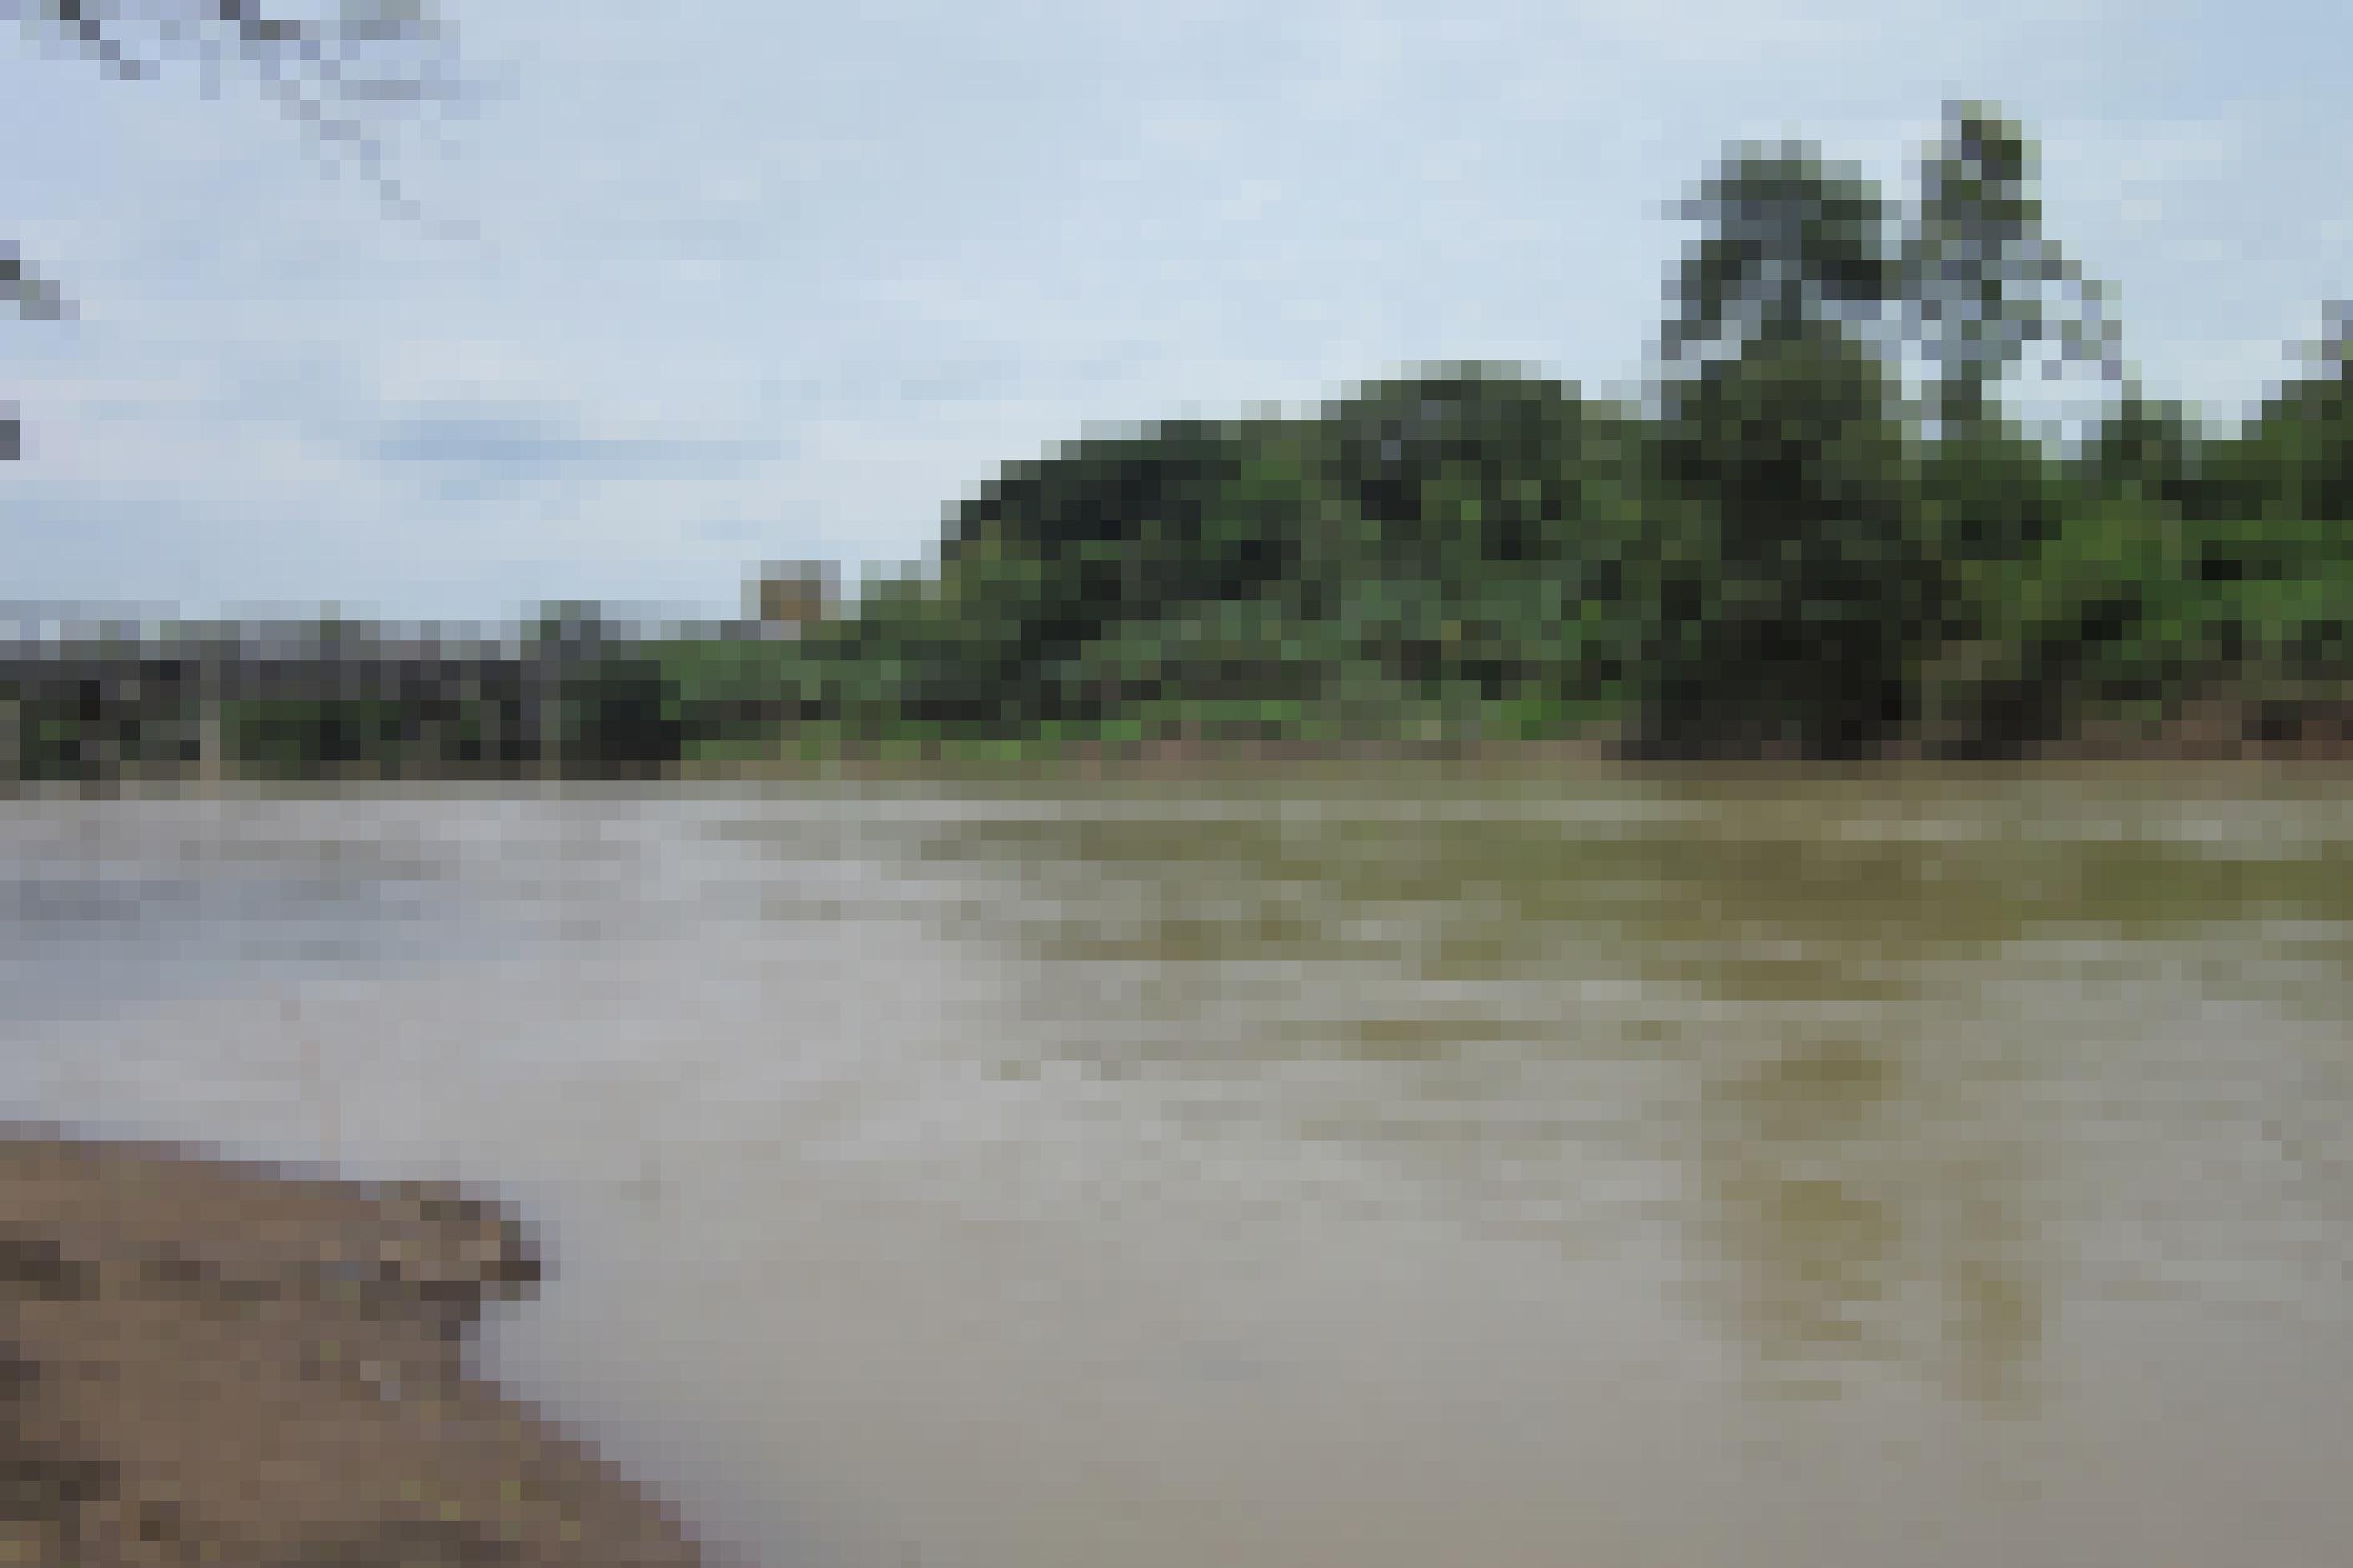 Das Bild zeigt den Blick auf einen Fluss, dessen Wasser eine trübe, grünbraune Farbe aufweist. An den Ufern schmale braune Sandstreifen, auf der rechten Seite schließen sich dem Streifen grüne Büsche und Bäume an. Links im Hintergrund eine Stahlbrücke, die über den Fluss führt.